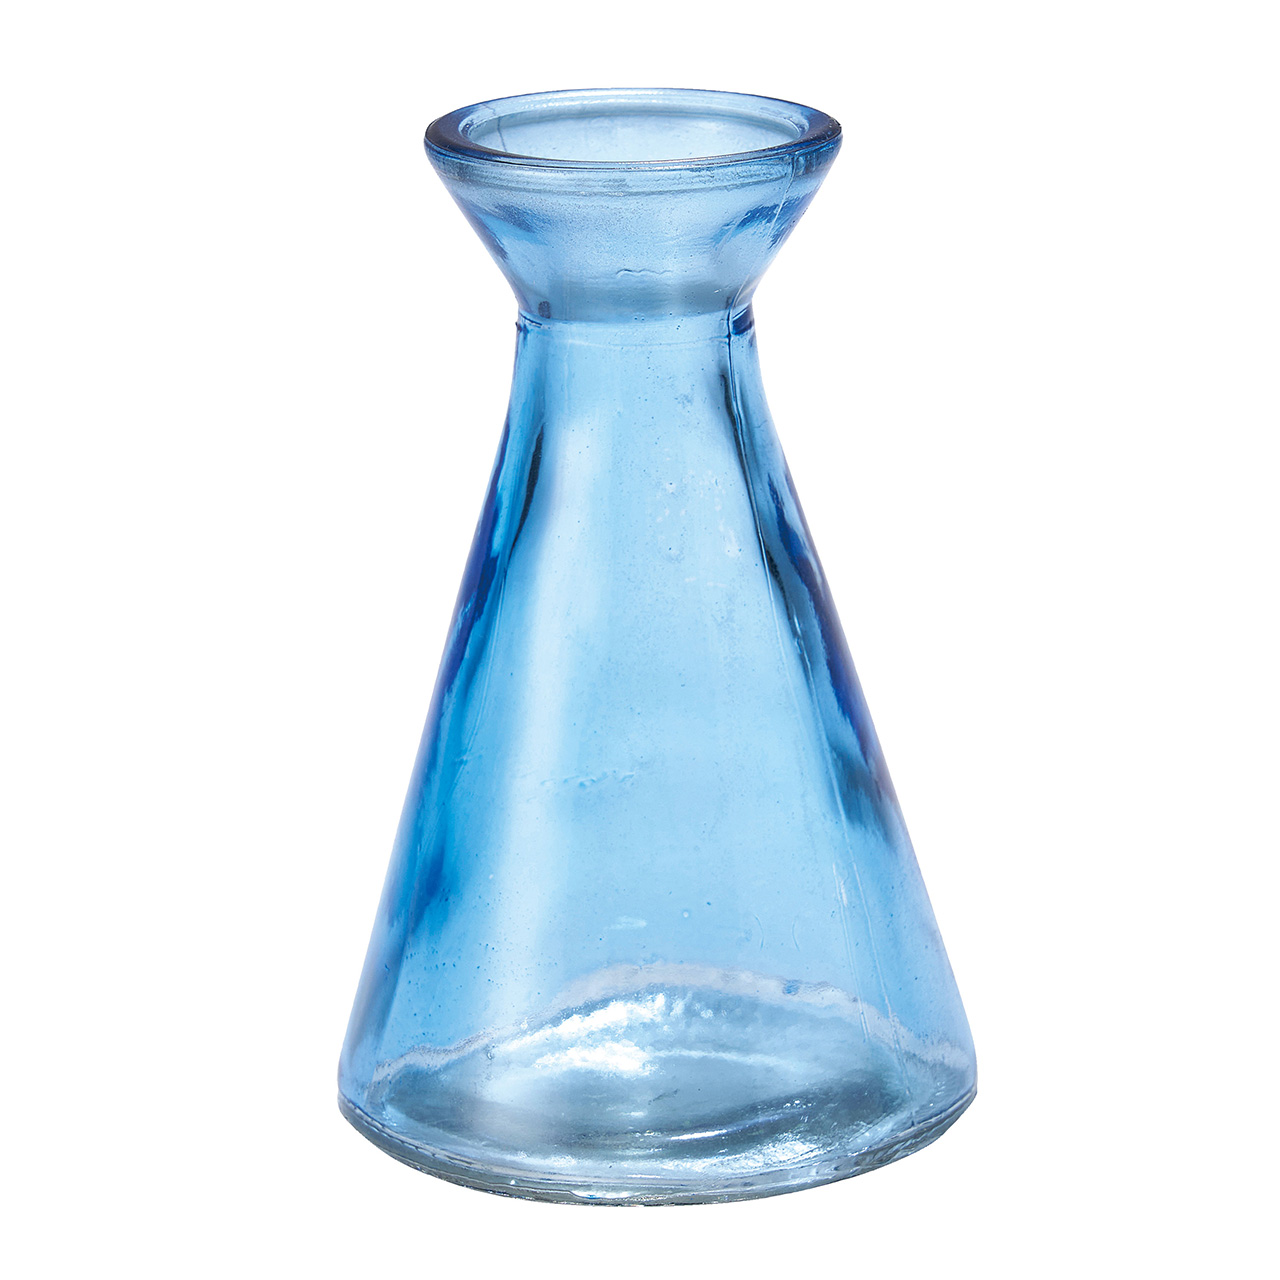 マイフラ】 通販/ミニフラワーベース ブルー 花瓶 花器 6コ入(385円/1コあたり) リサイクルガラス サステナブル CD00GL16-0BL( ブルー): 花器・花瓶・フレーム・天然素材ベース/全国にMAGIQ、花器、花資材などをお届けします。